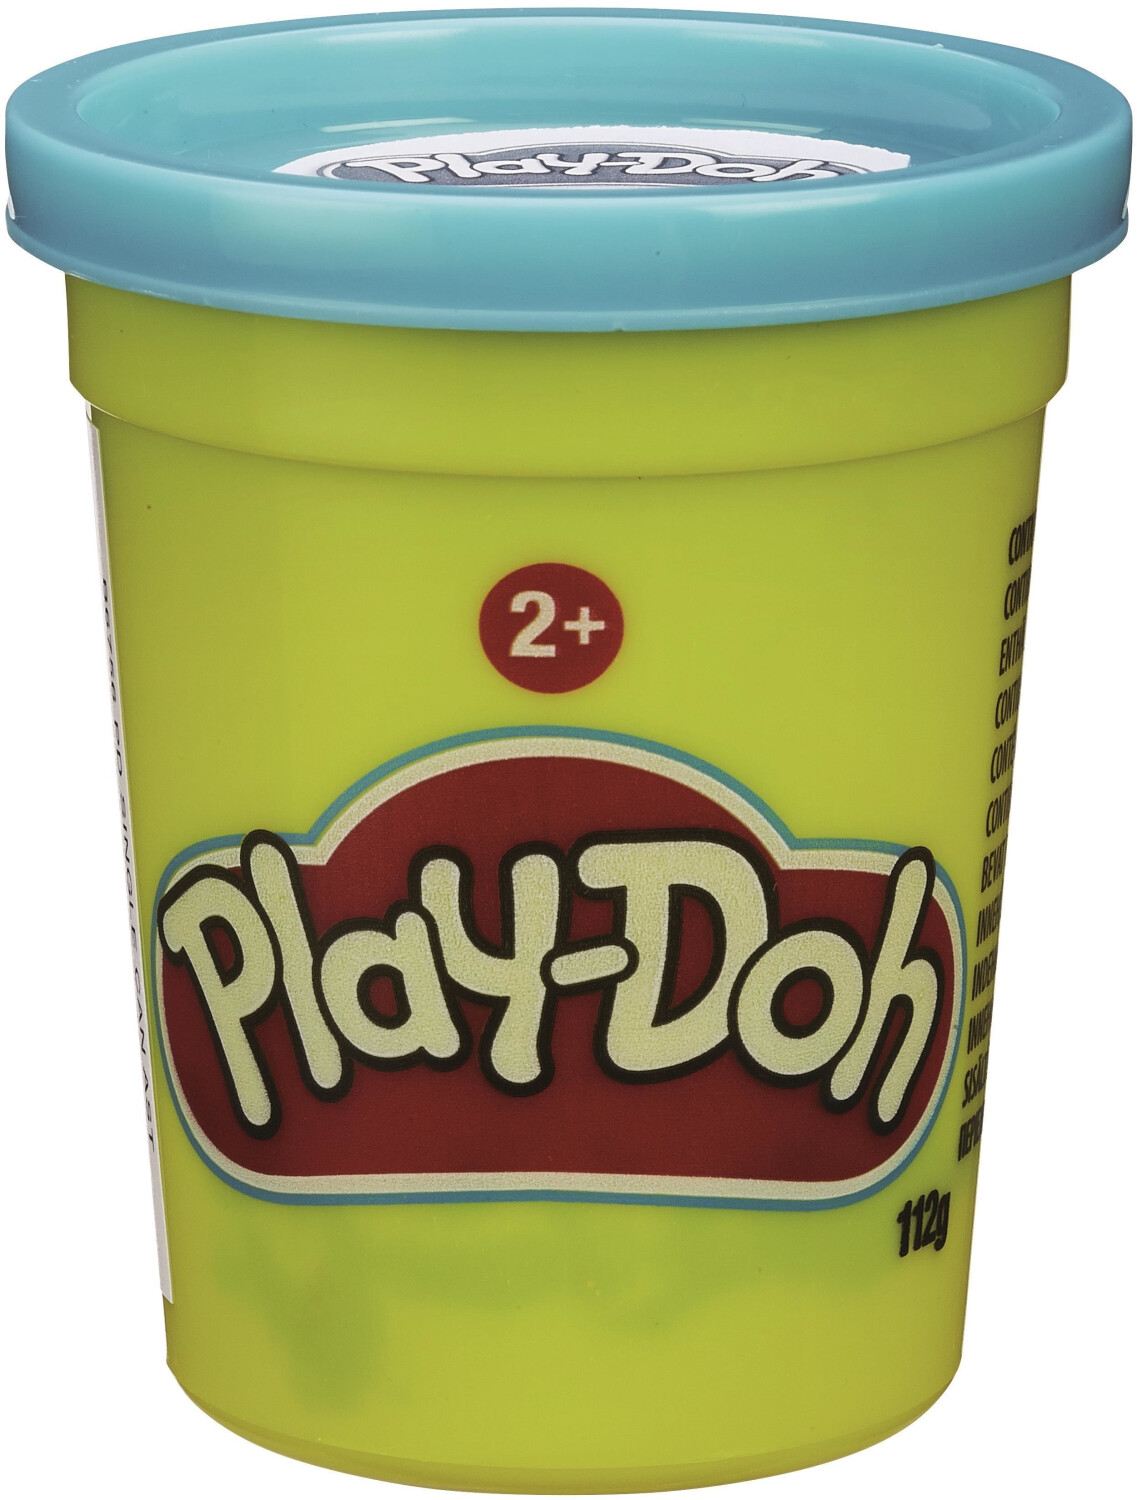 Play-Doh Little Chef Starter-Set au meilleur prix sur